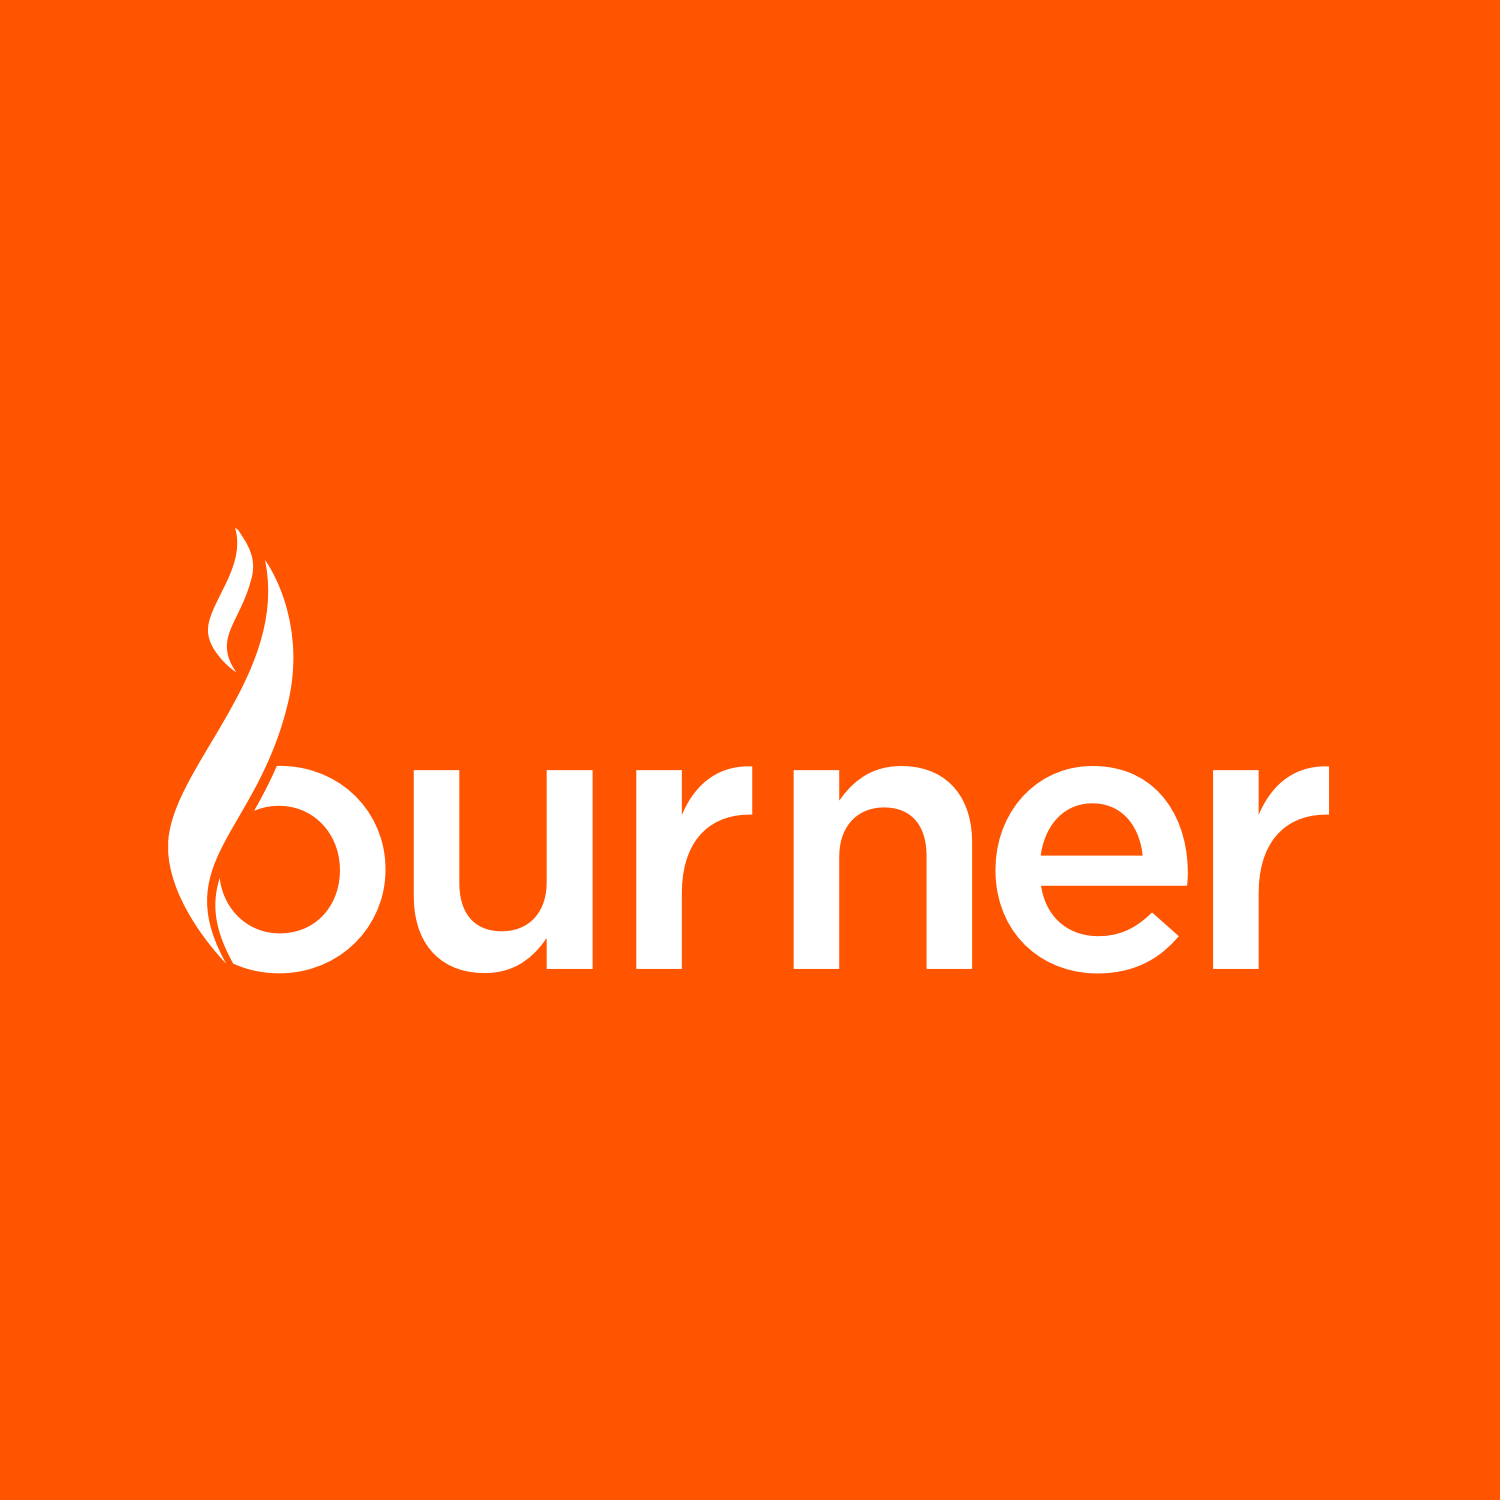 Burner Logo - Burner Logo.png